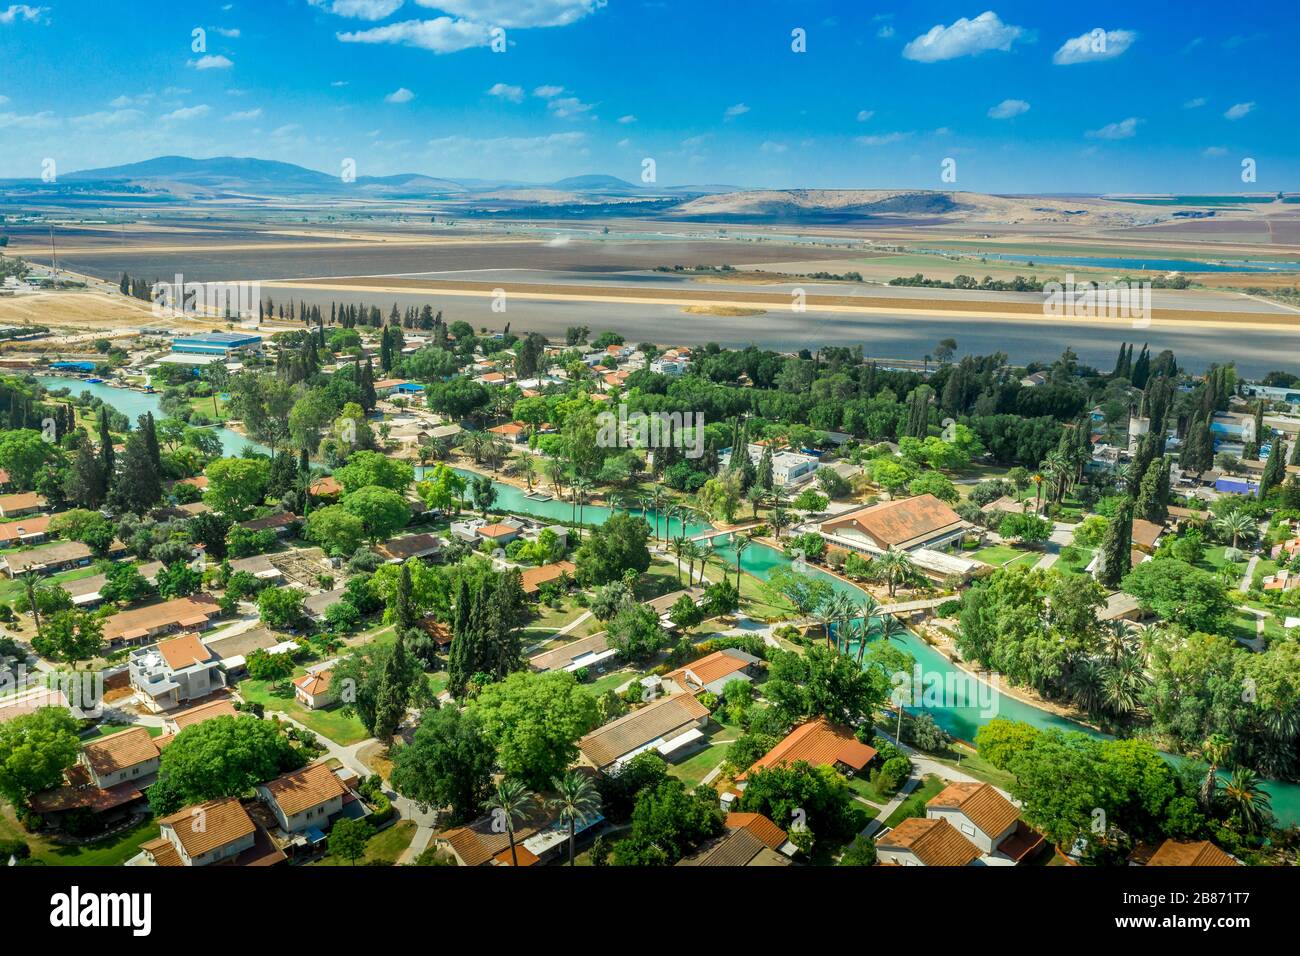 Luftpanorama des türkisfarbenen Flusses Amal, der durch die traditionell in der Landwirtschaft ansässige Kollektivgemeinde Kibbutz NIR David in Israel verläuft Stockfoto